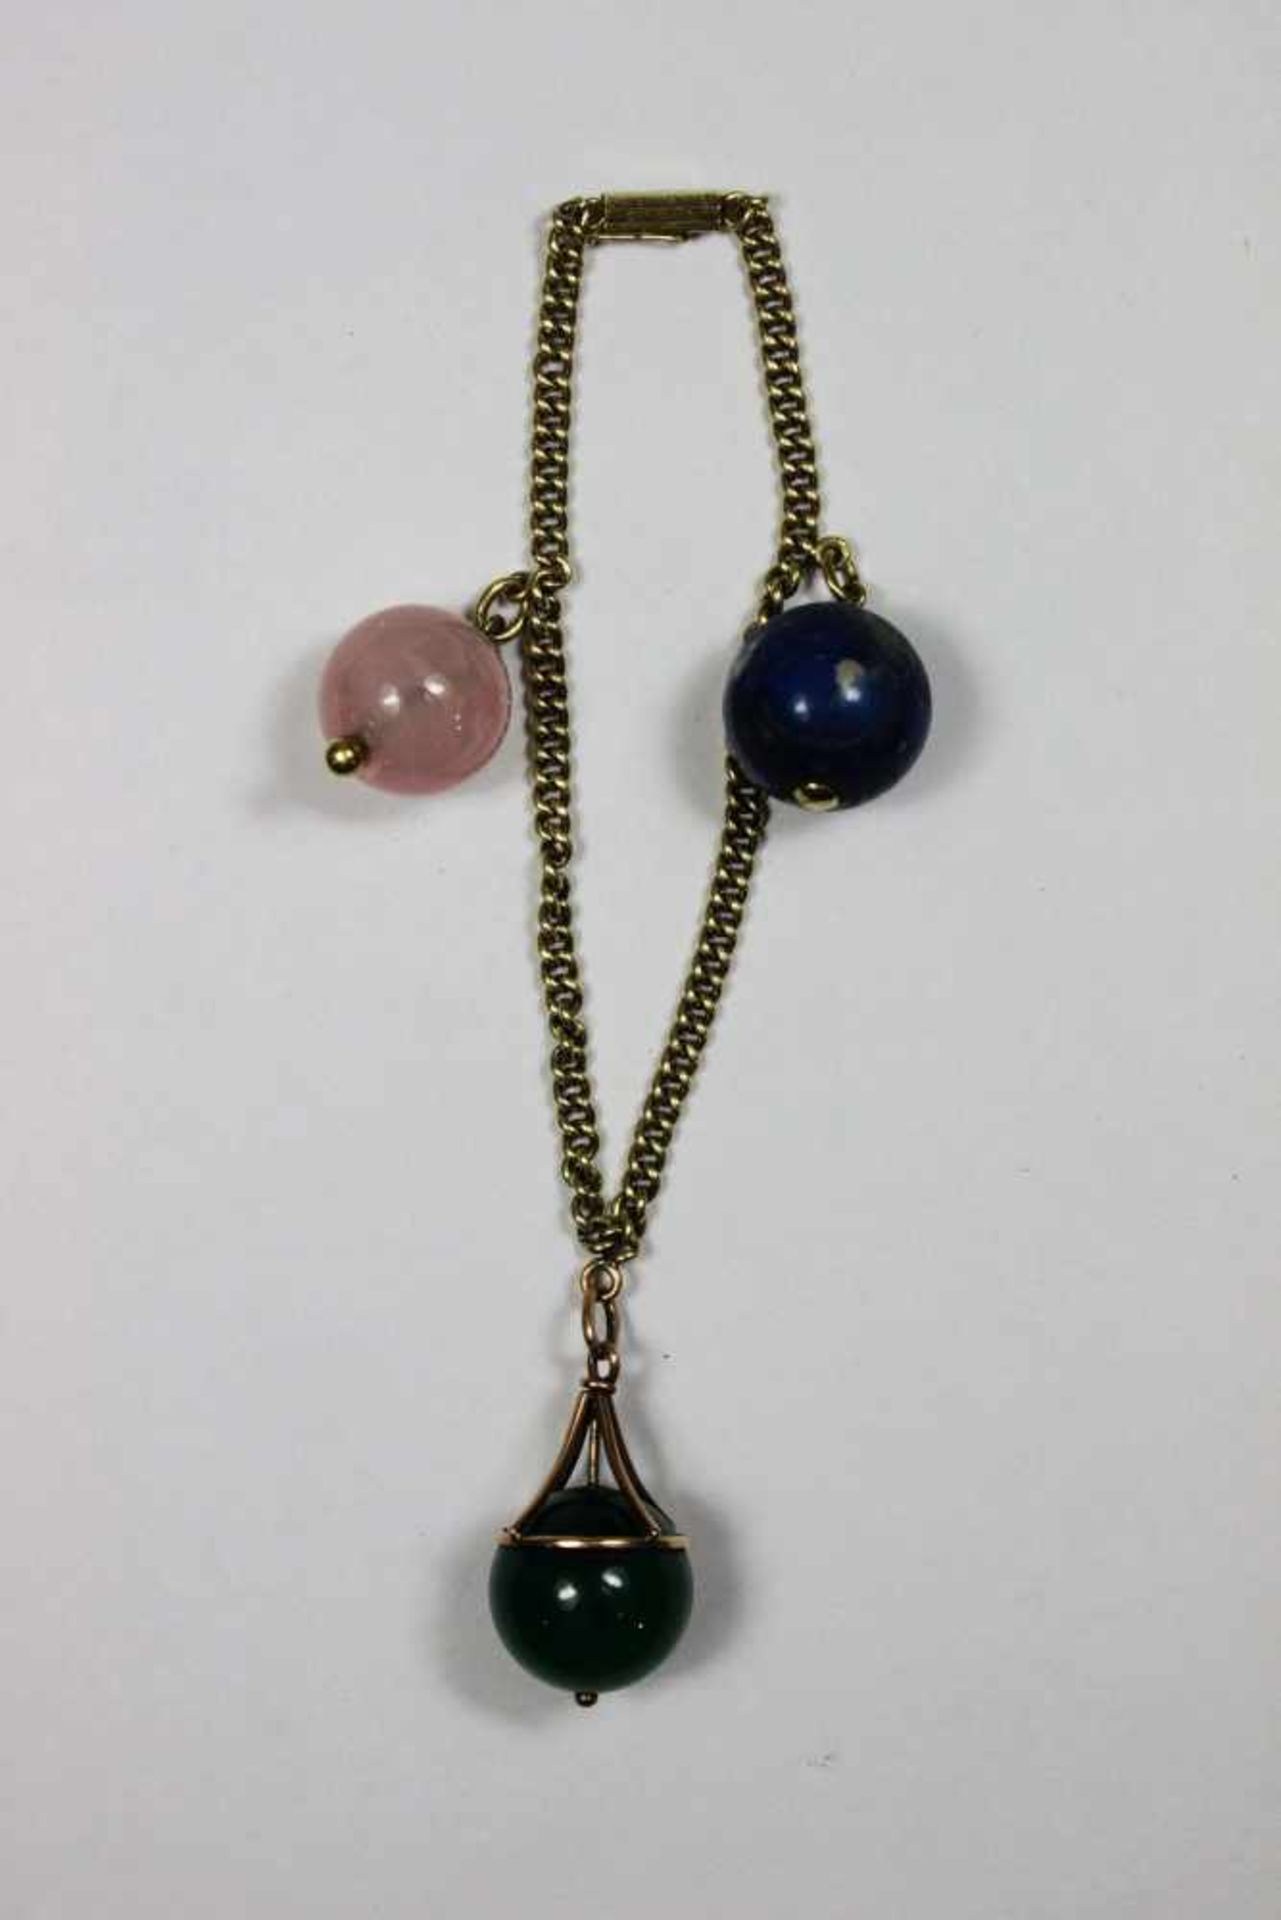 Armband, 585 Gold punziert, 28,3 g, mit drei Schmucksteinen in Kugelform, blau, grün und rosa.